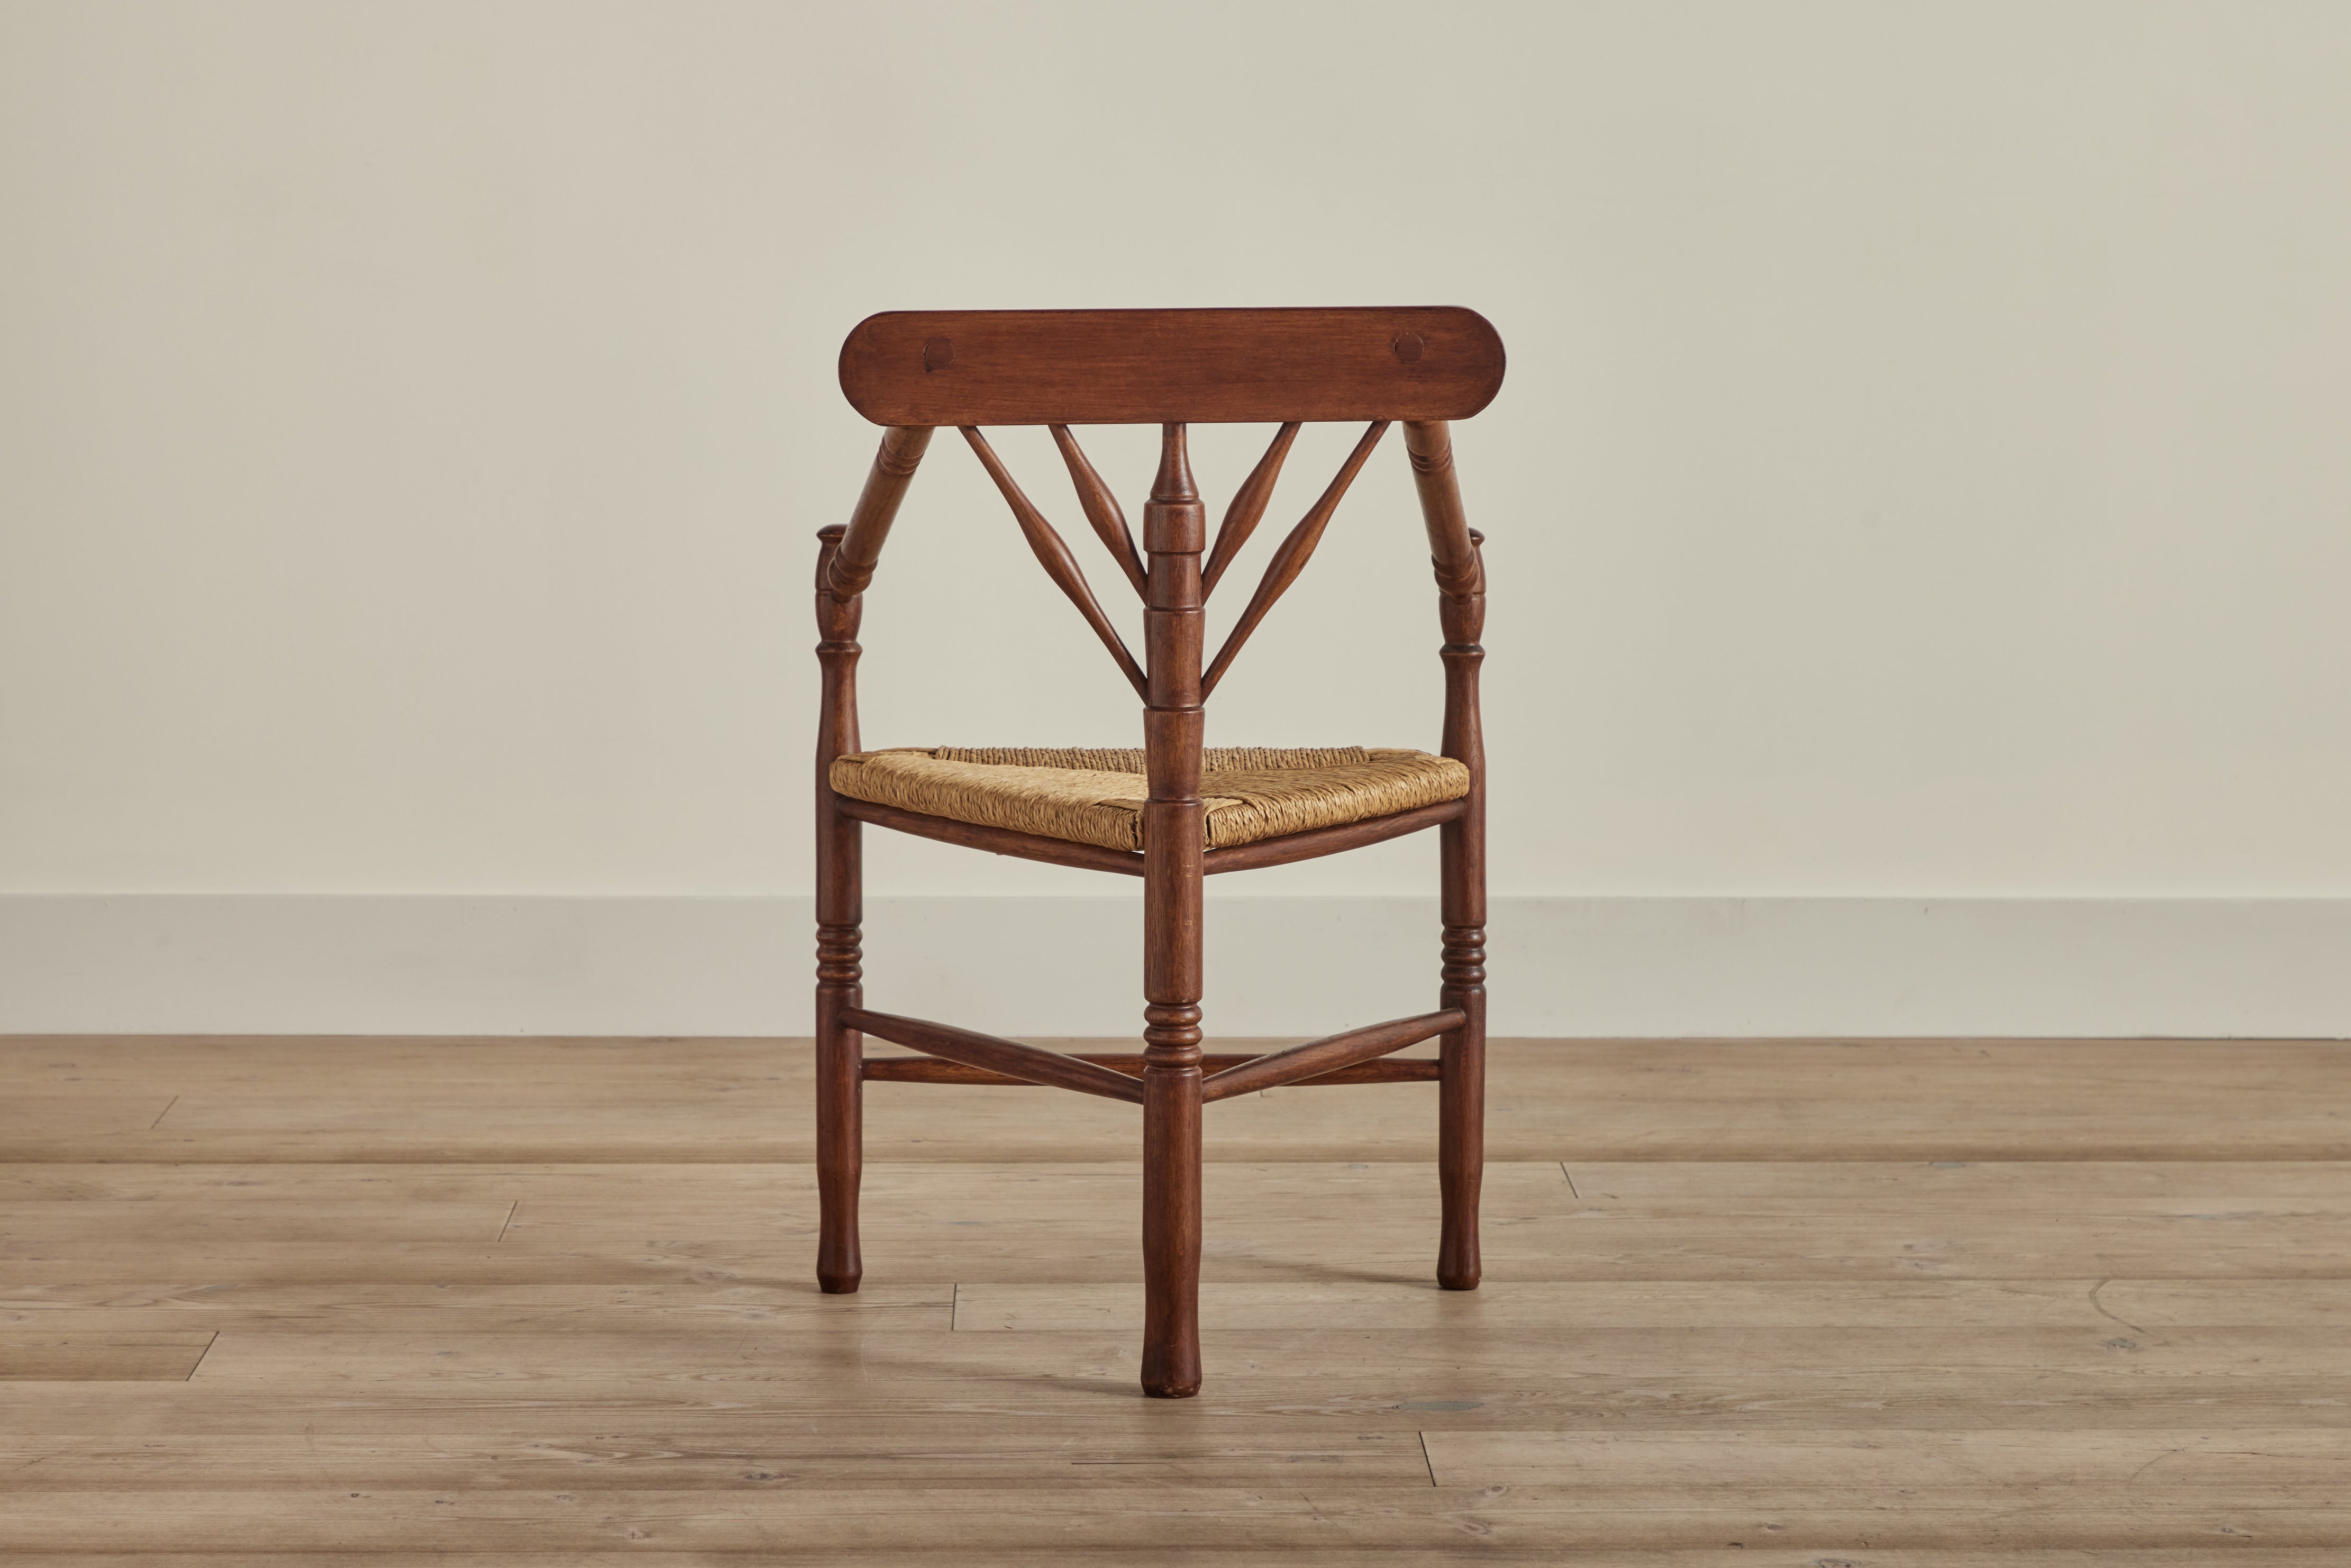 Dutch Turner's Chair